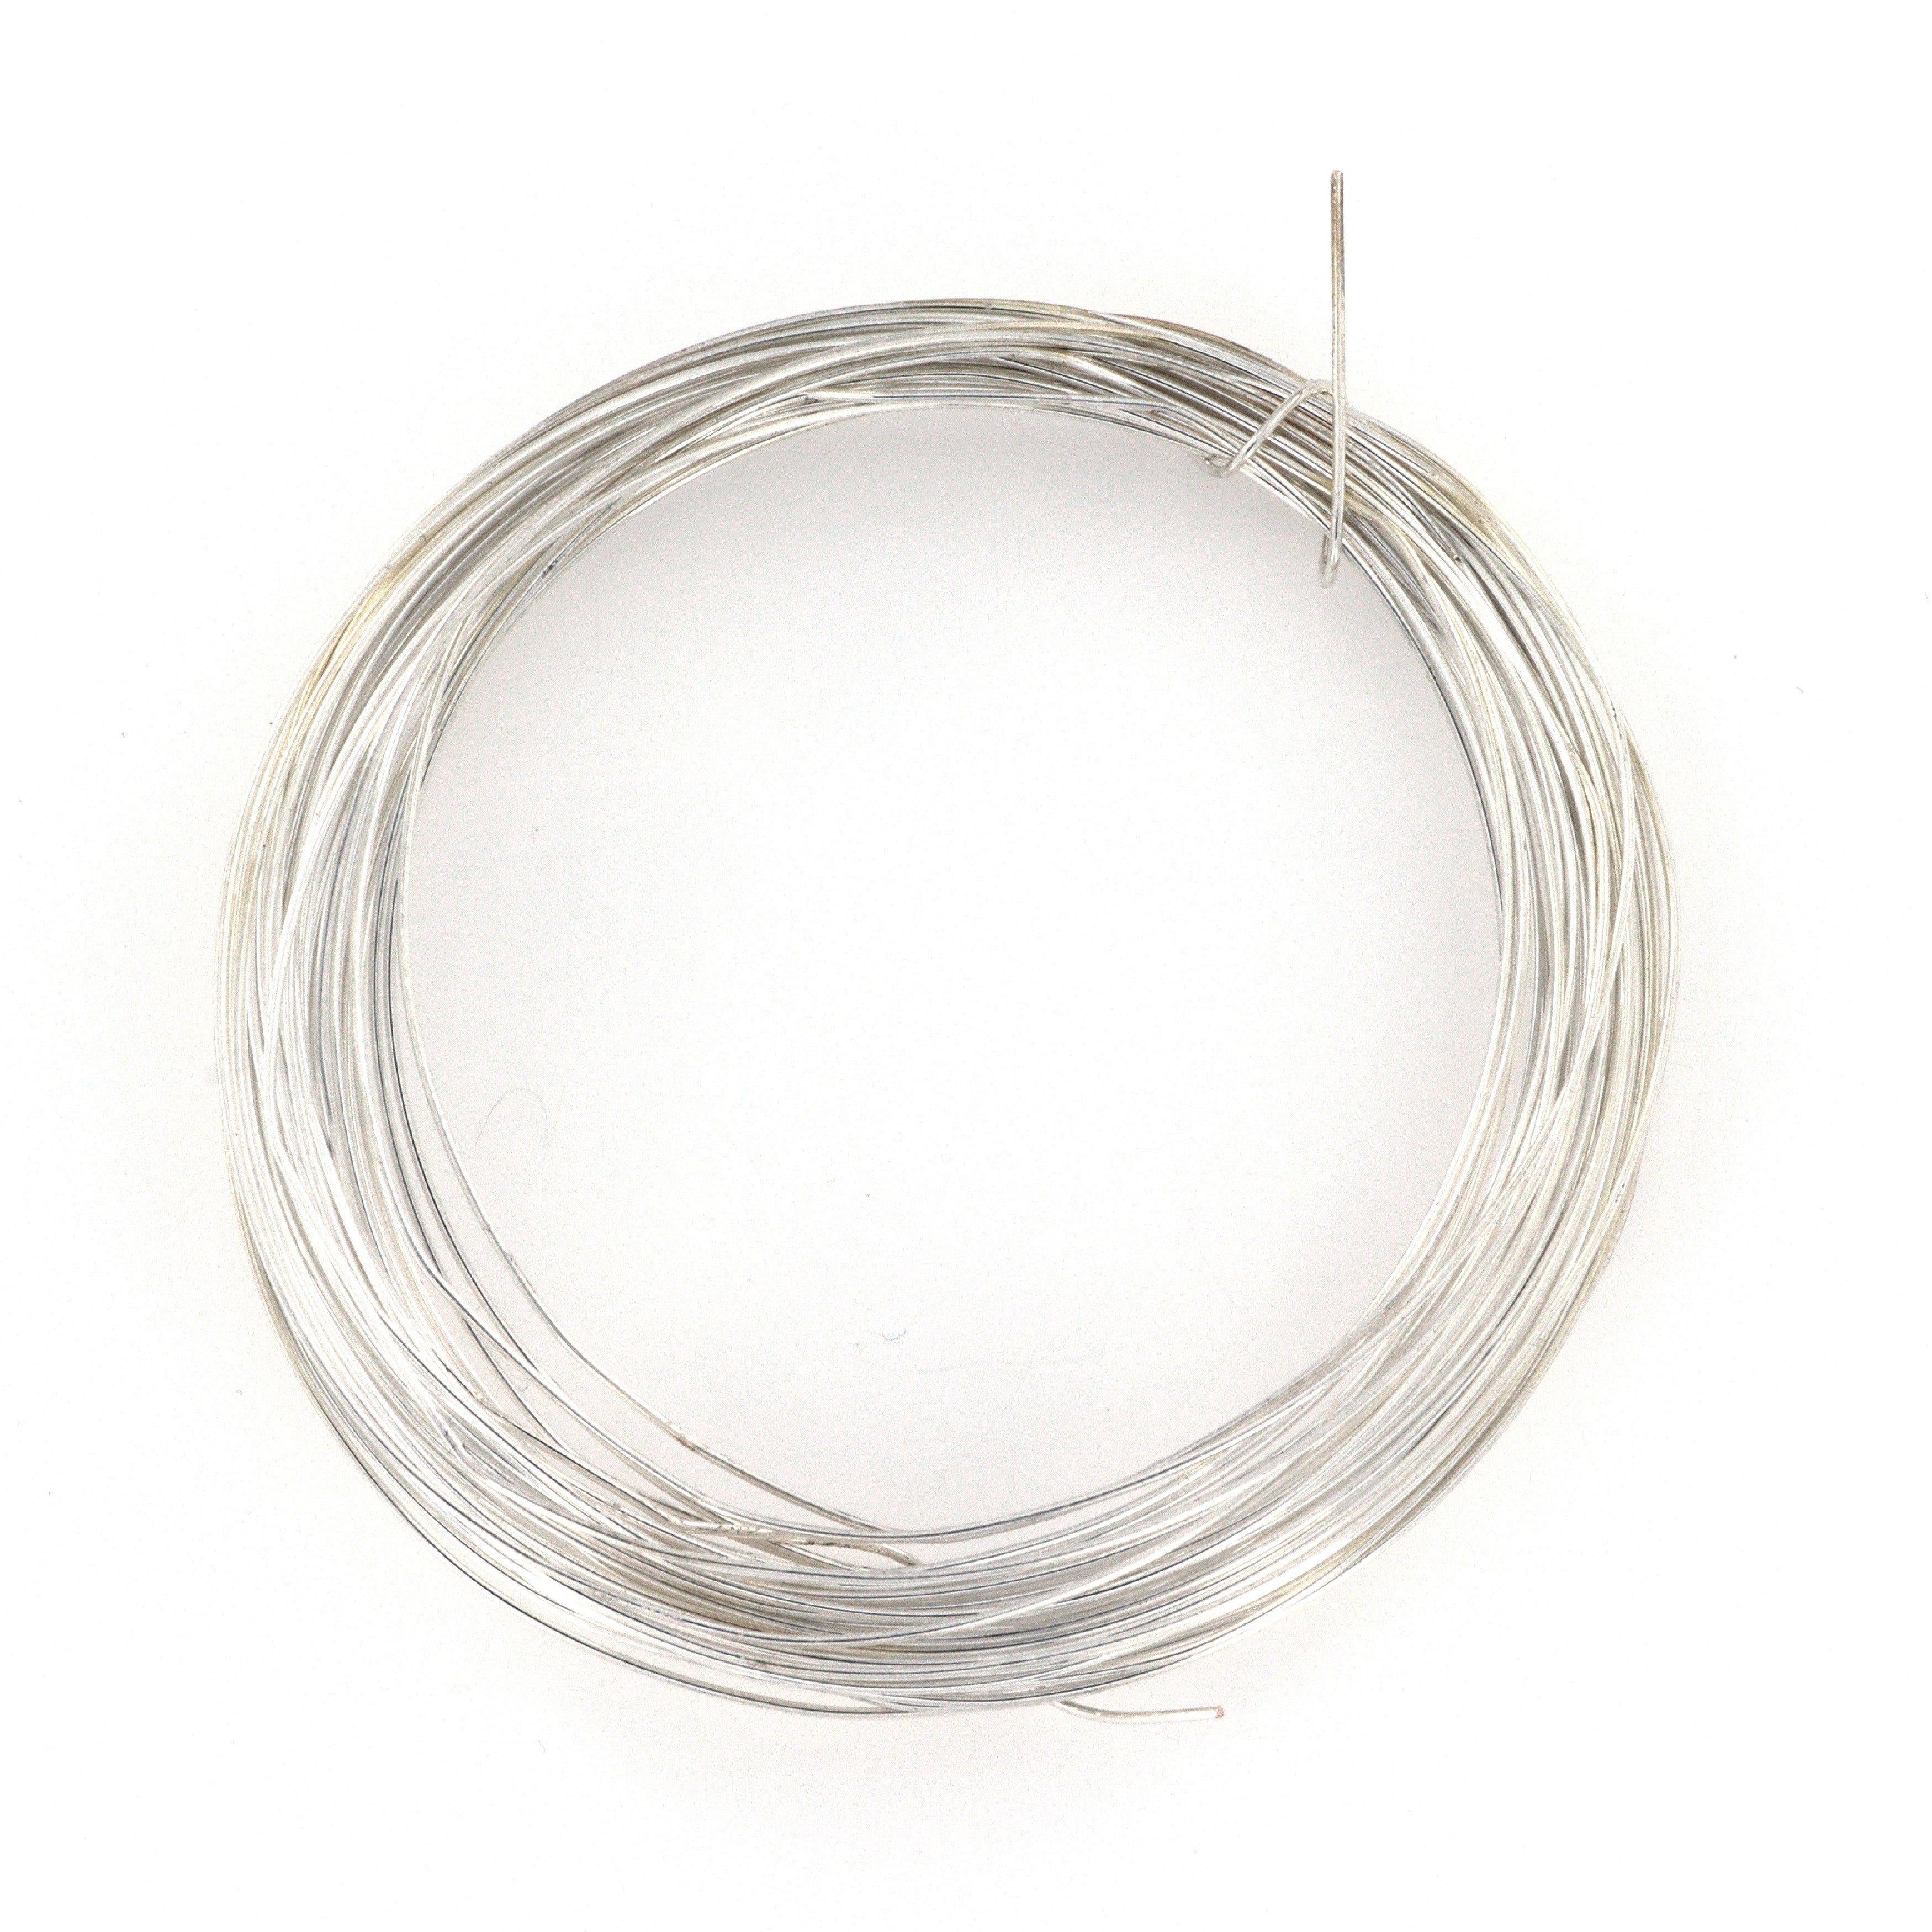 Fil nylon transparent élastique - Fil nylon - 10 Doigts